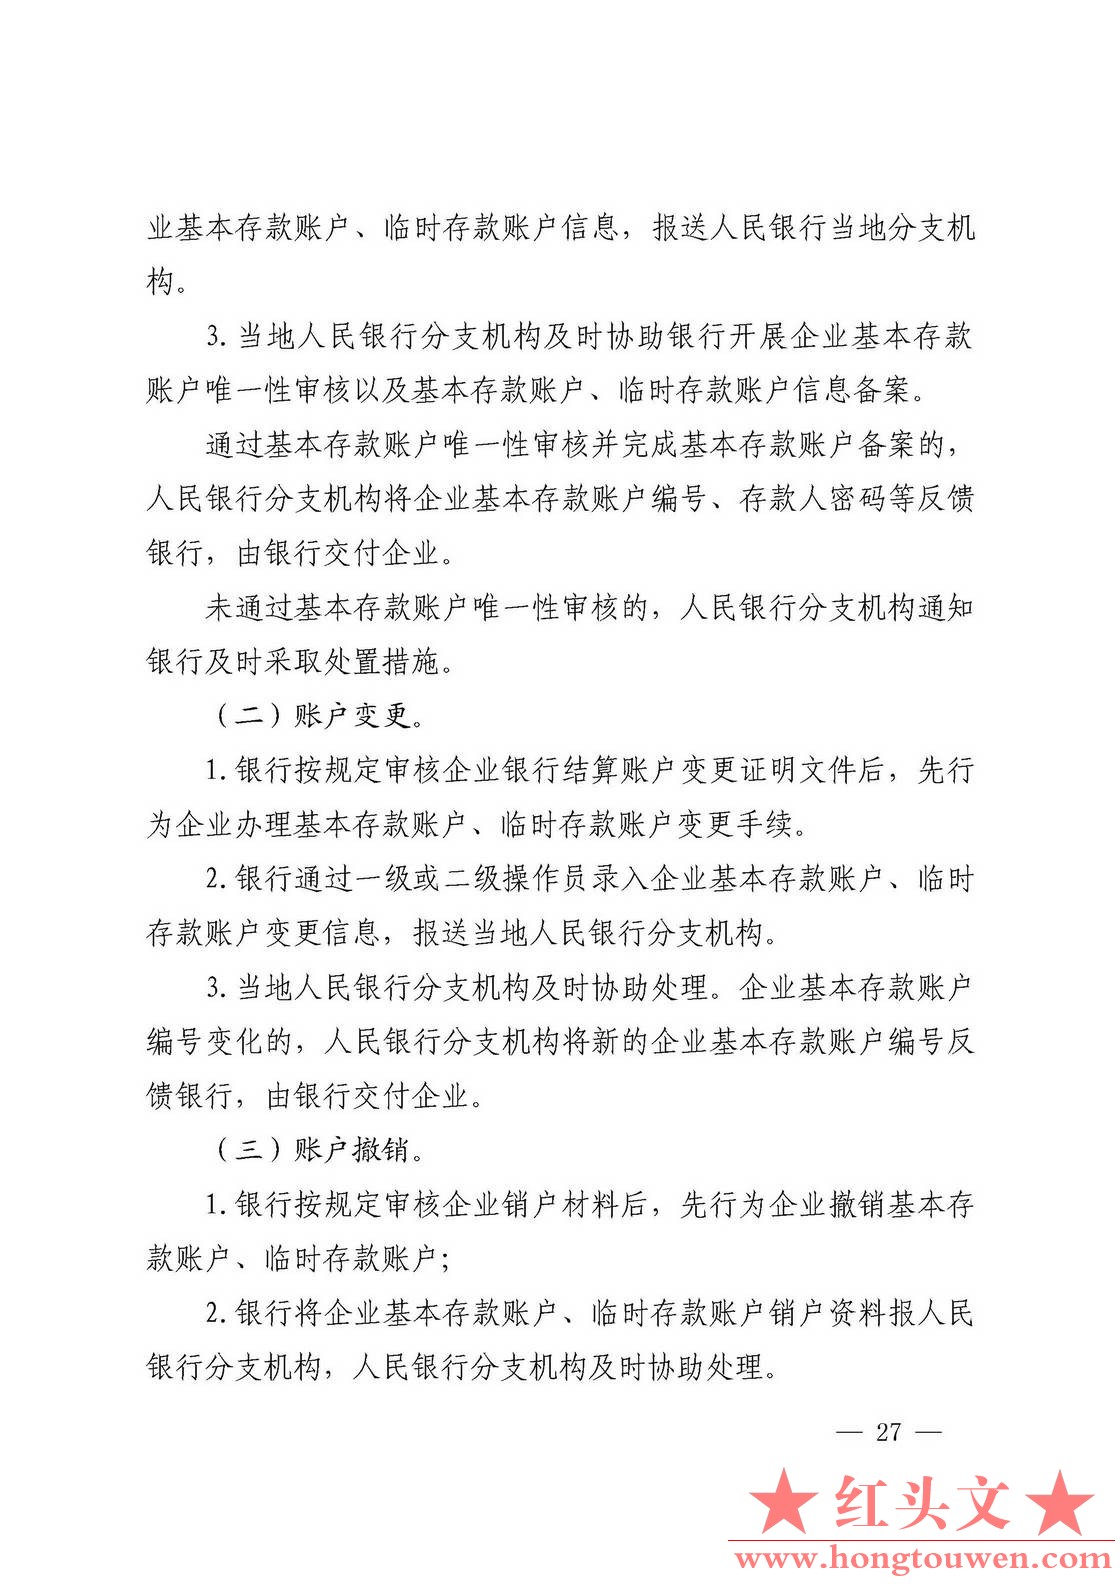 银发[2019]41号-中国人民银行关于取消企业银行账户许可的通知_页面_27.jpg.jpg